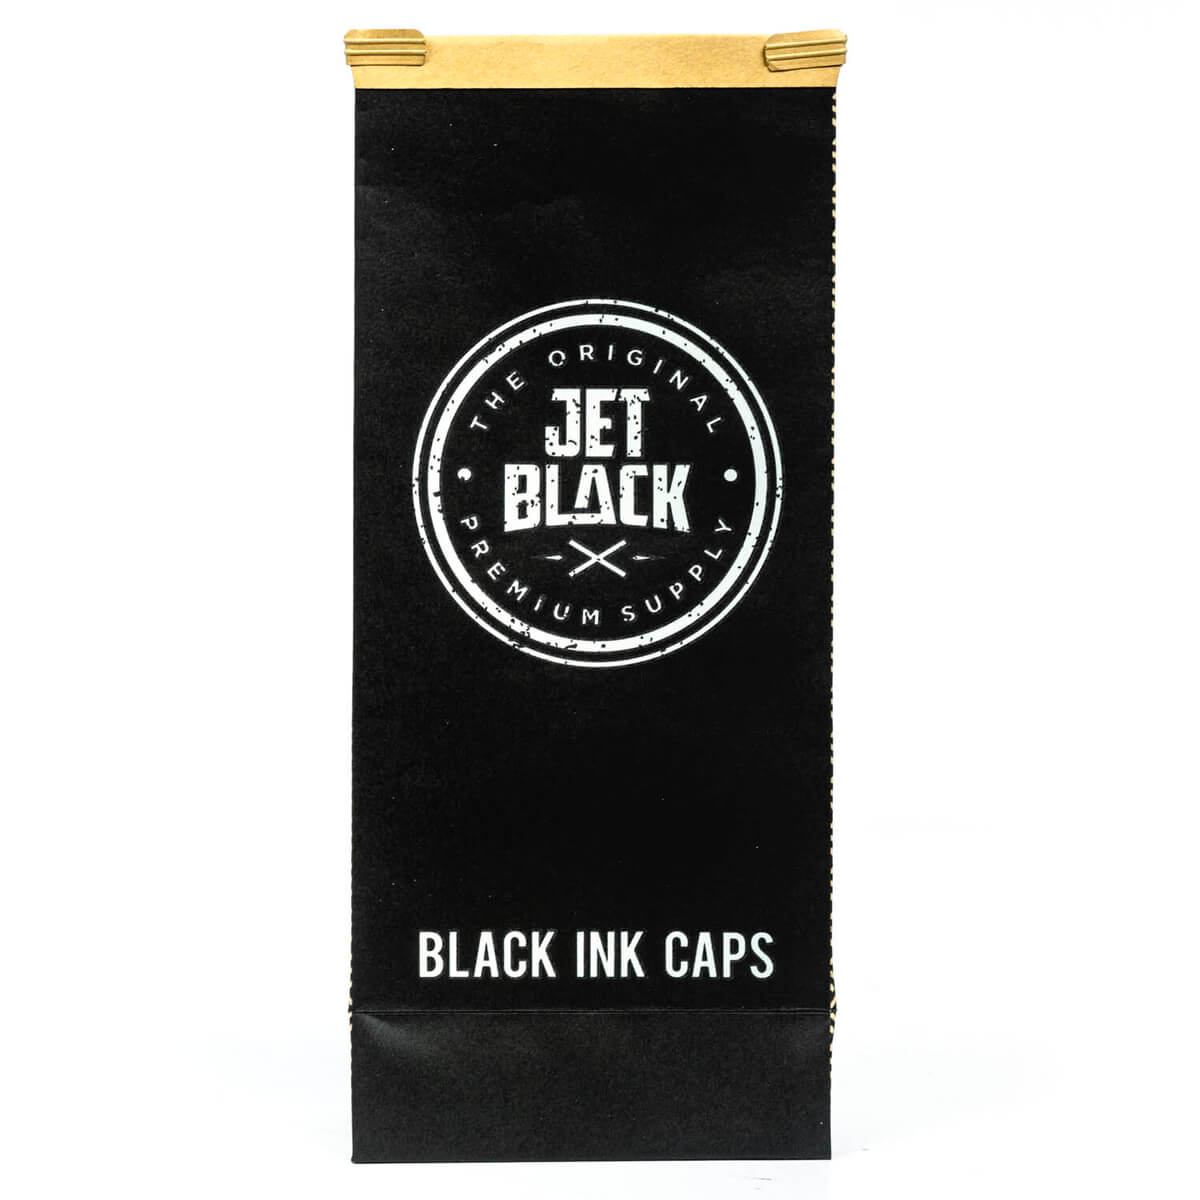 JBS Black Ink Caps